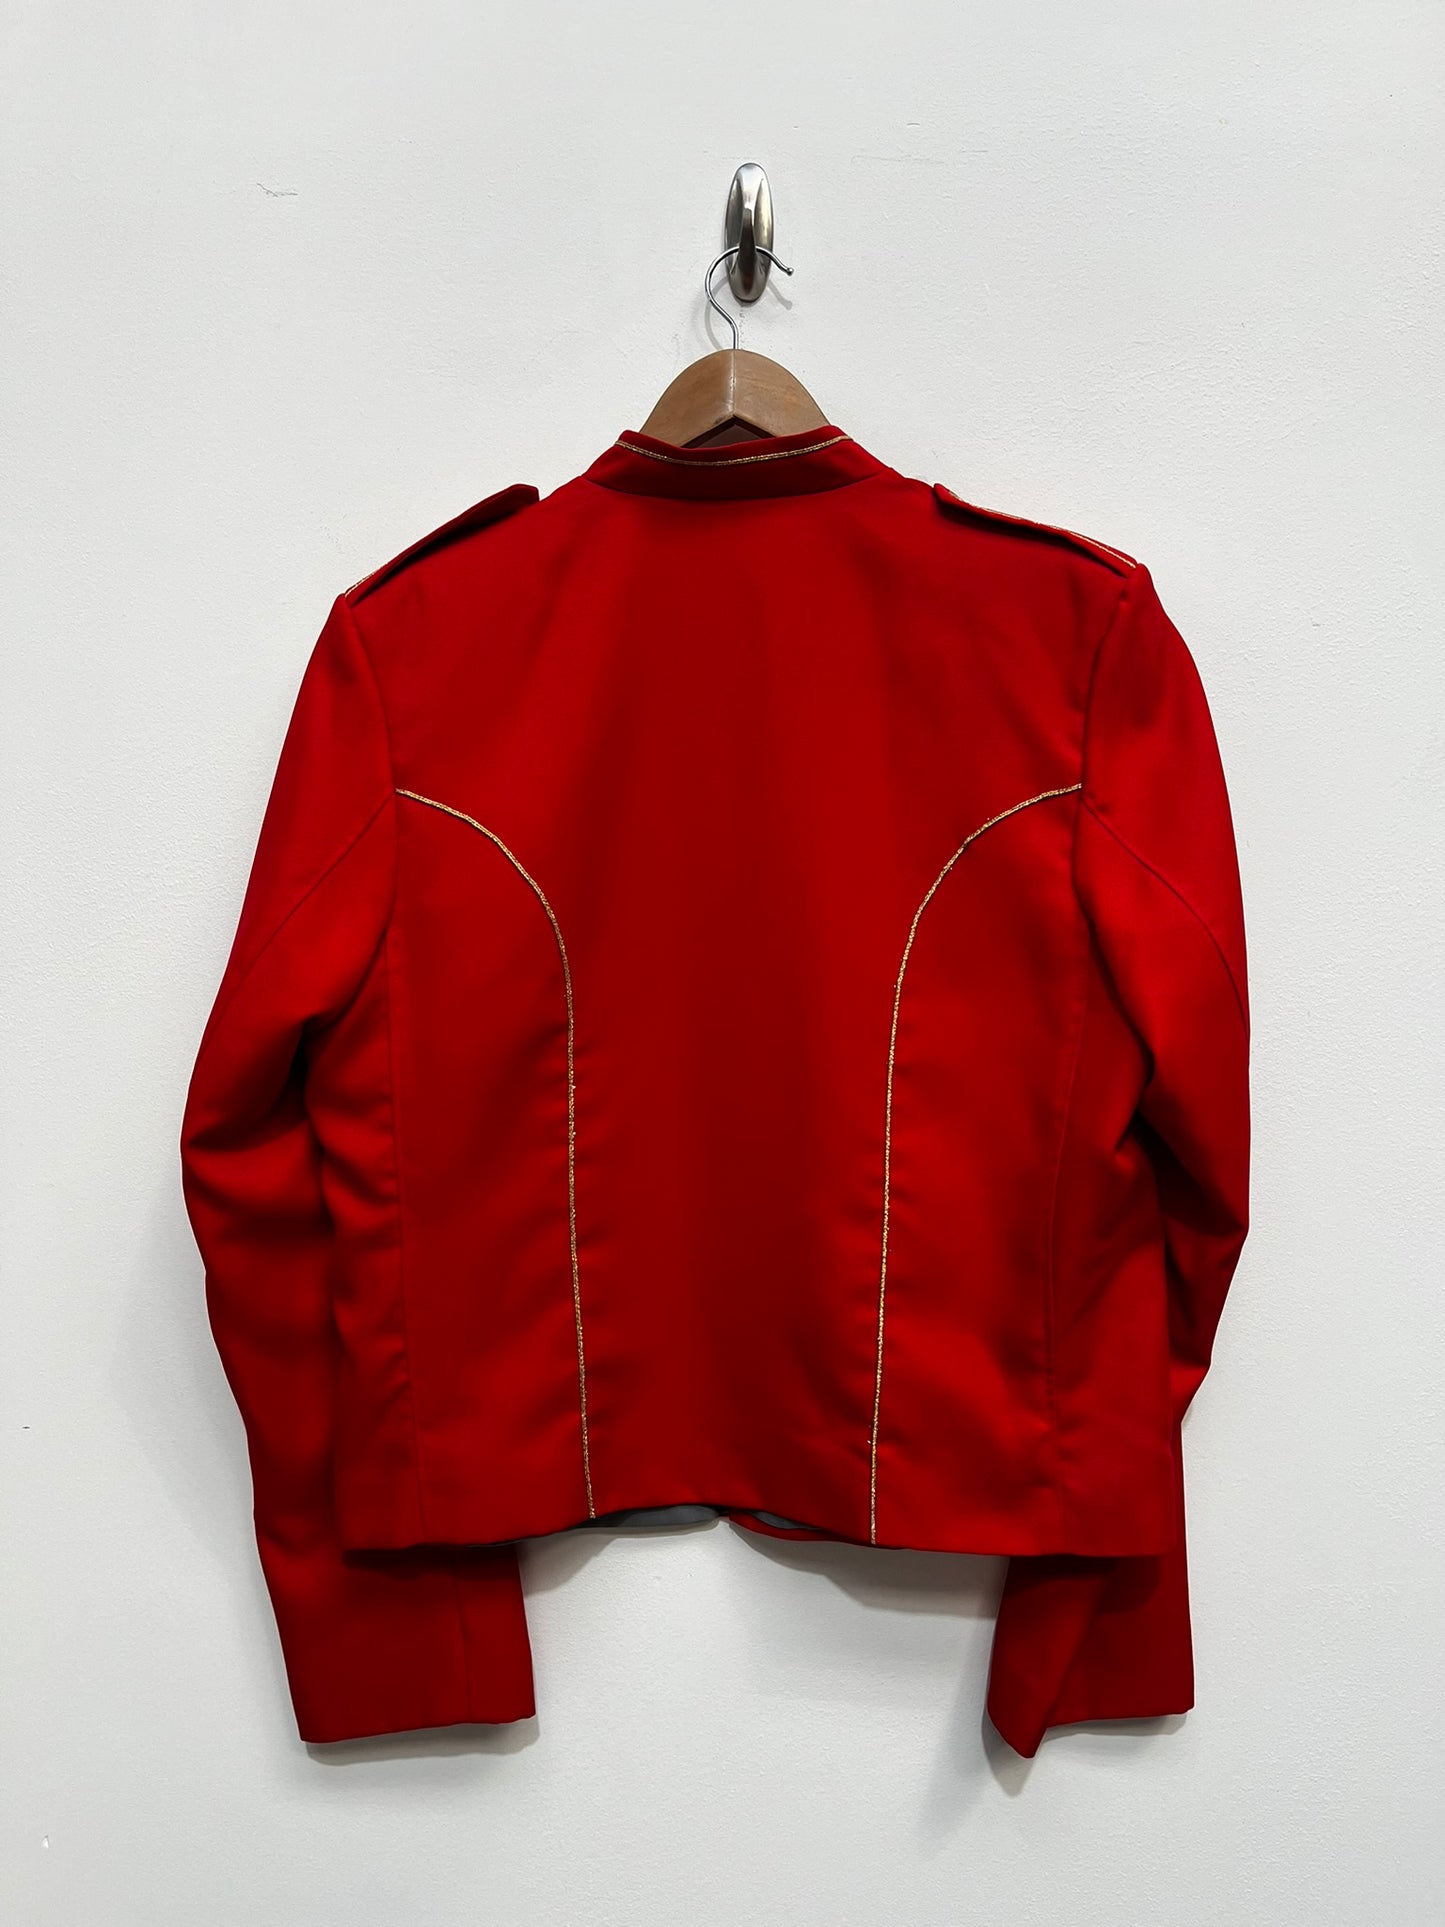 Red Uniform buttoned jacket Husaar Butler, Buttons Panto Musician Costume M/L